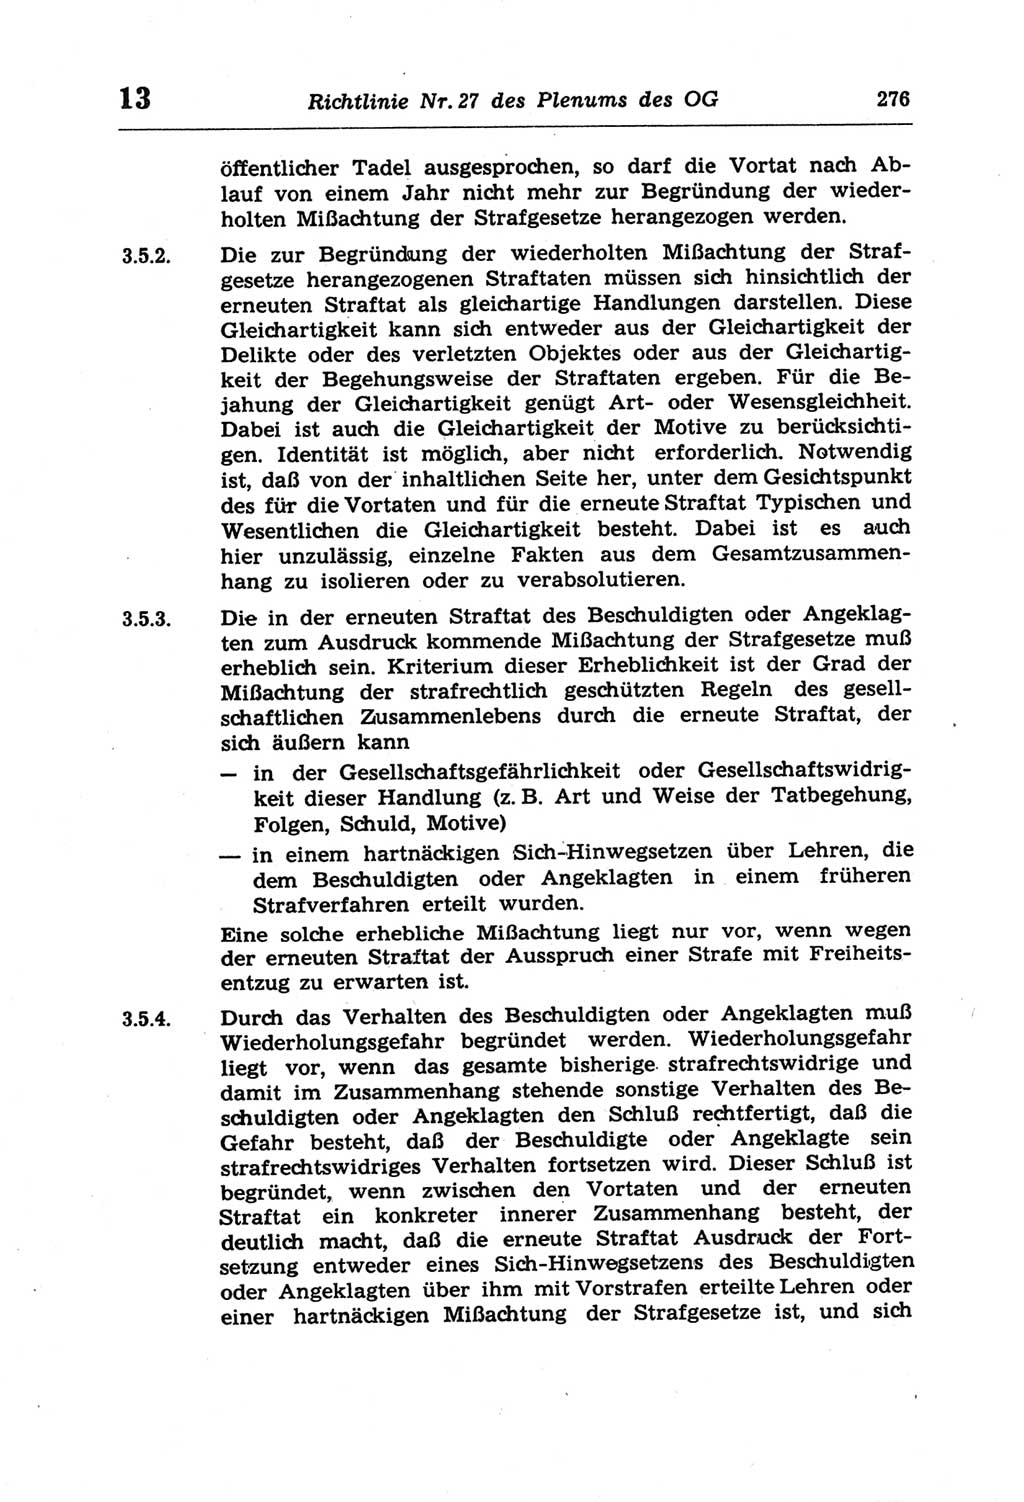 Strafprozeßordnung (StPO) der Deutschen Demokratischen Republik (DDR) und angrenzende Gesetze und Bestimmungen 1968, Seite 276 (StPO Ges. Bstgn. DDR 1968, S. 276)